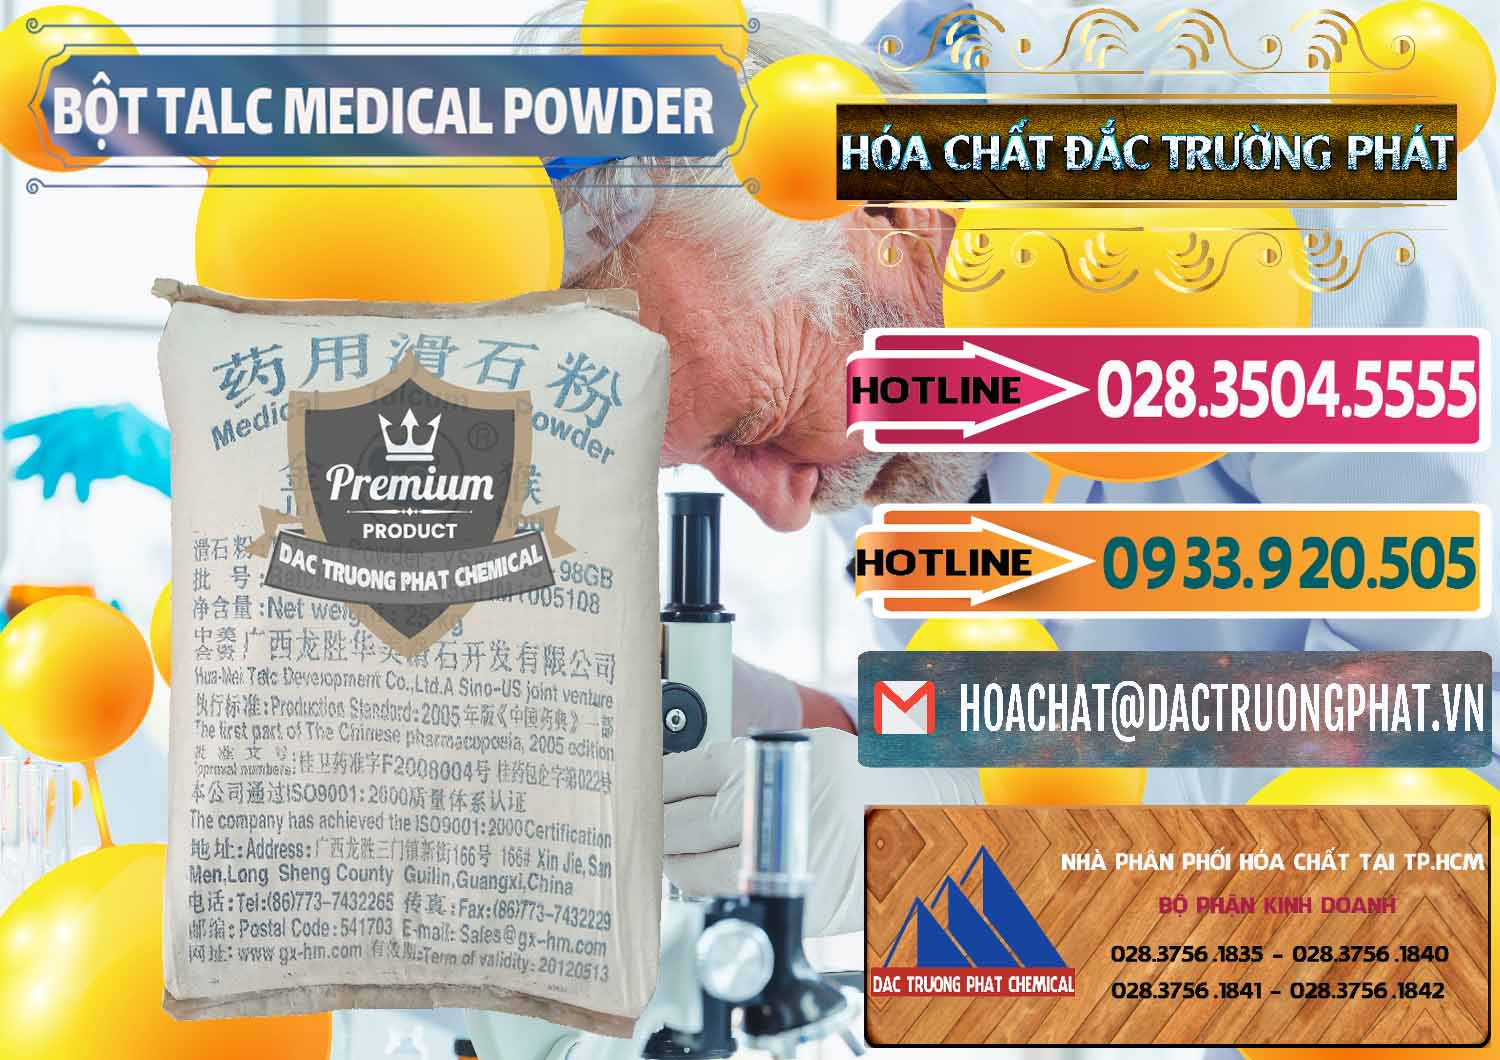 Cty chuyên kinh doanh _ bán Bột Talc Medical Powder Trung Quốc China - 0036 - Đơn vị cung ứng & phân phối hóa chất tại TP.HCM - dactruongphat.vn